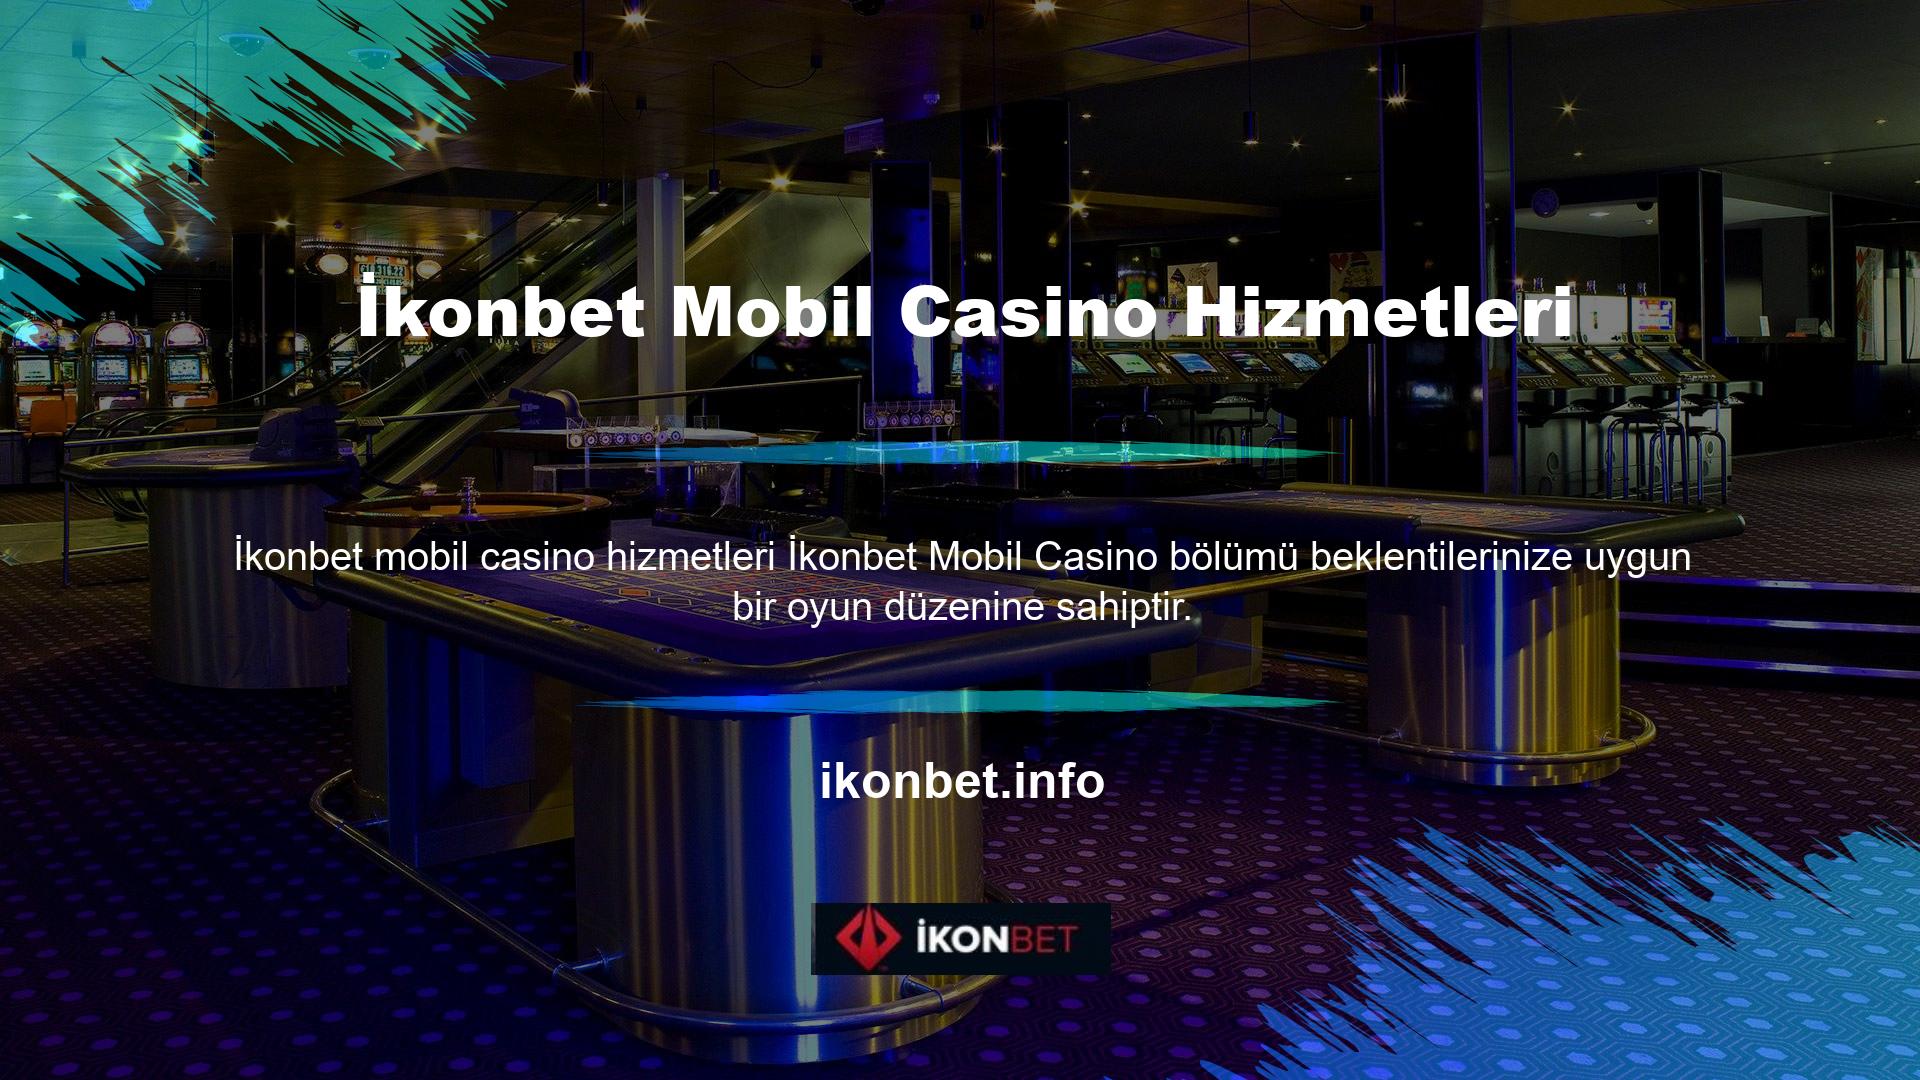 Aşağıda İkonbet mobil casino hizmetleri Ayrıca altta bir Lobi/Oyunlar/Arama/Bilgi bölümü vardır